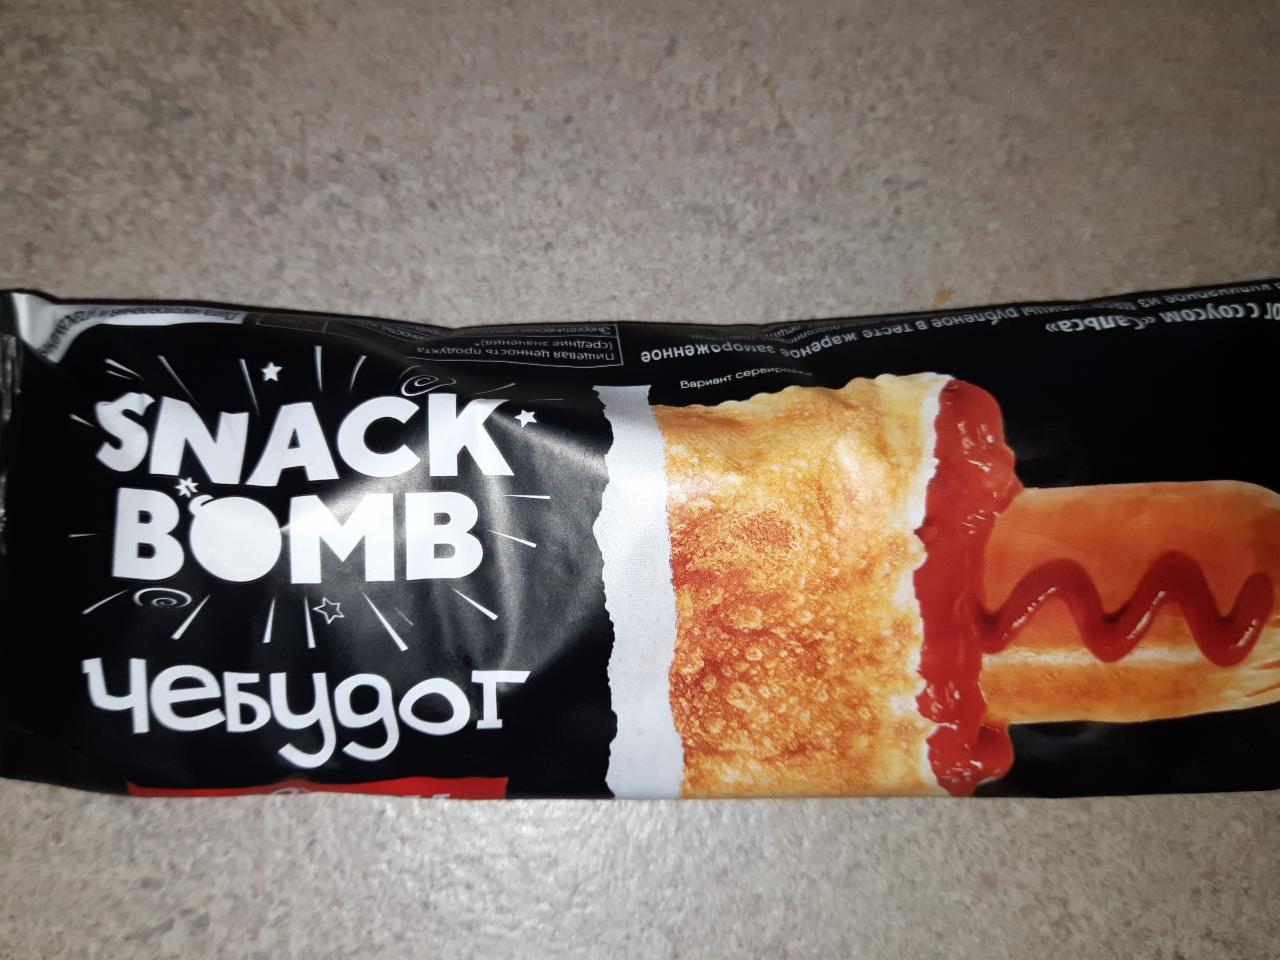 Фото - чебудог с соусом сальса Snack bomb